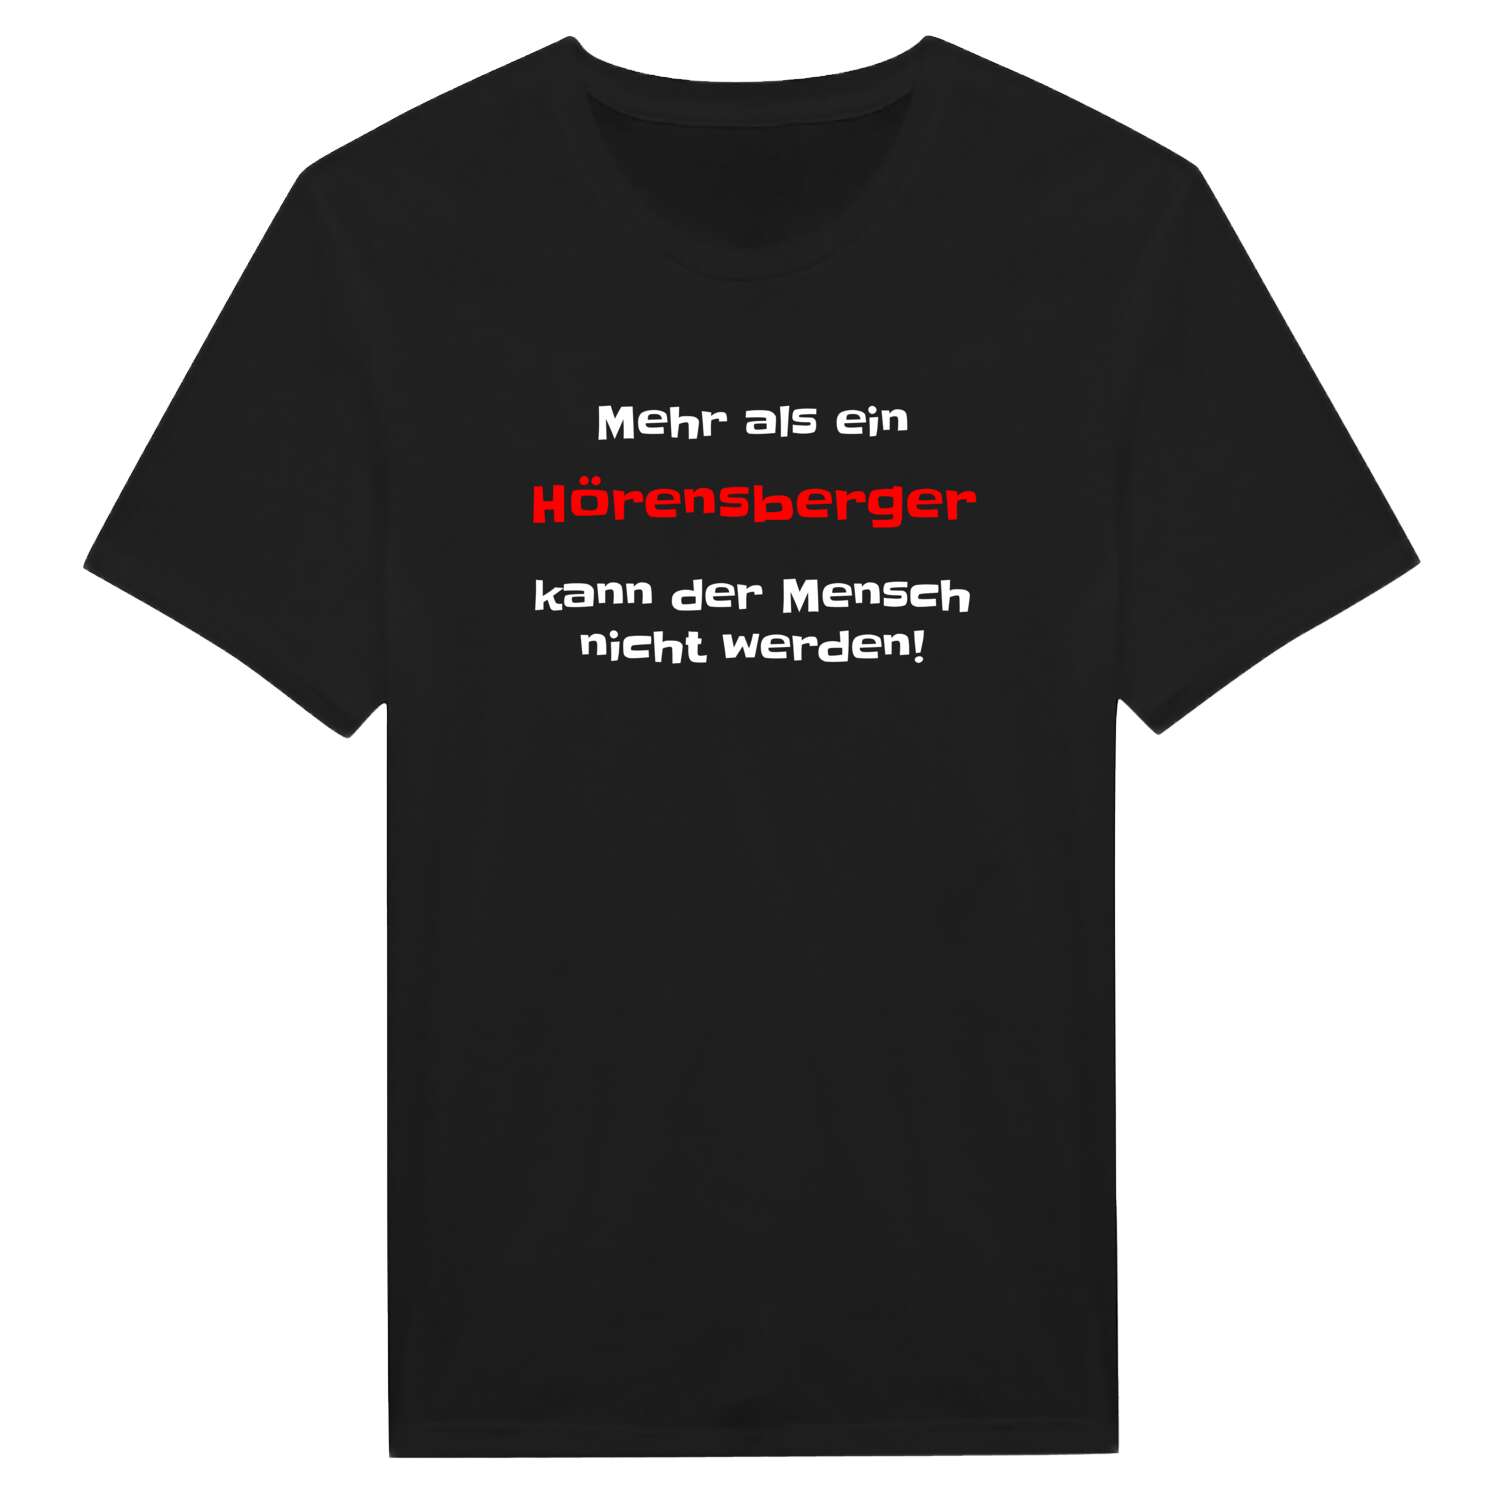 Hörensberg T-Shirt »Mehr als ein«